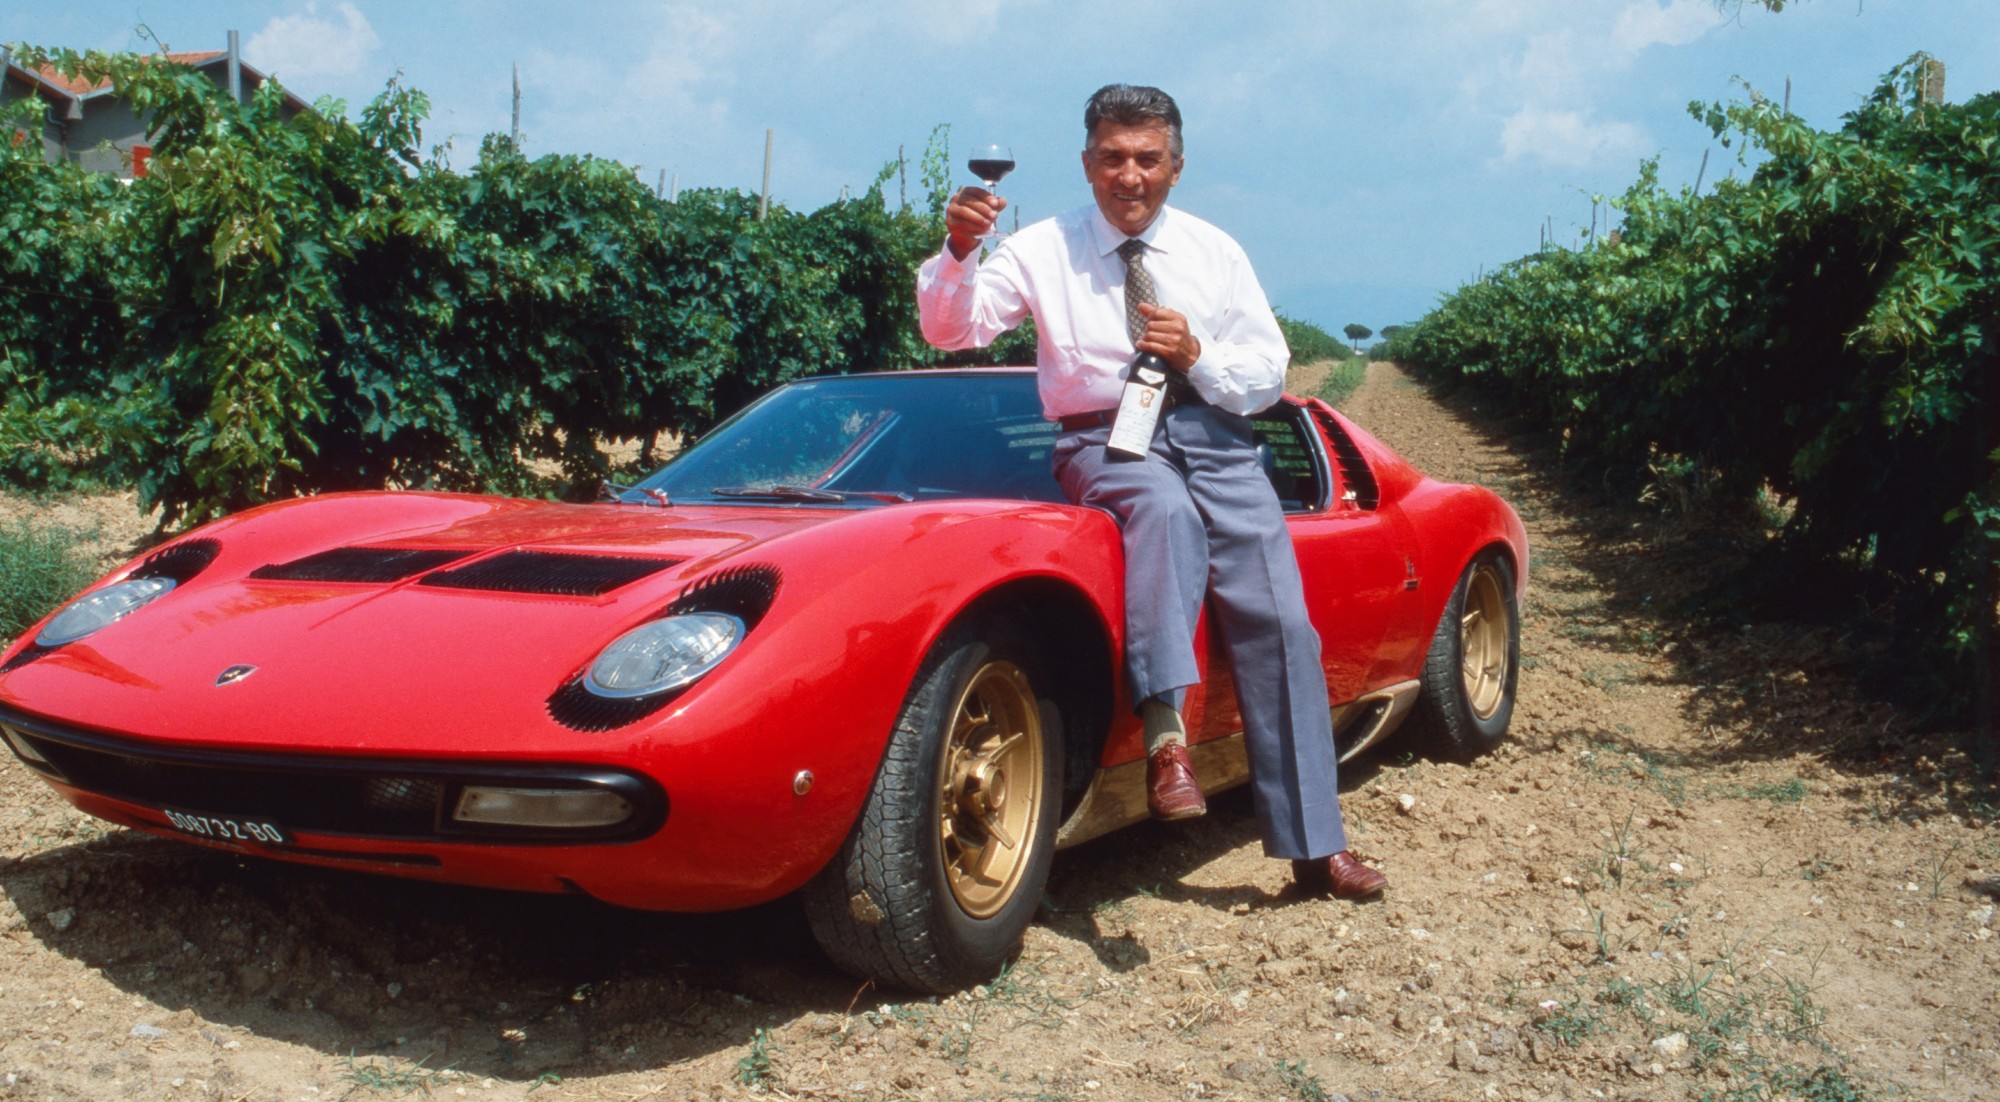 Ferruccio Lamborghini, el hombre que nació bajo el influjo del toro